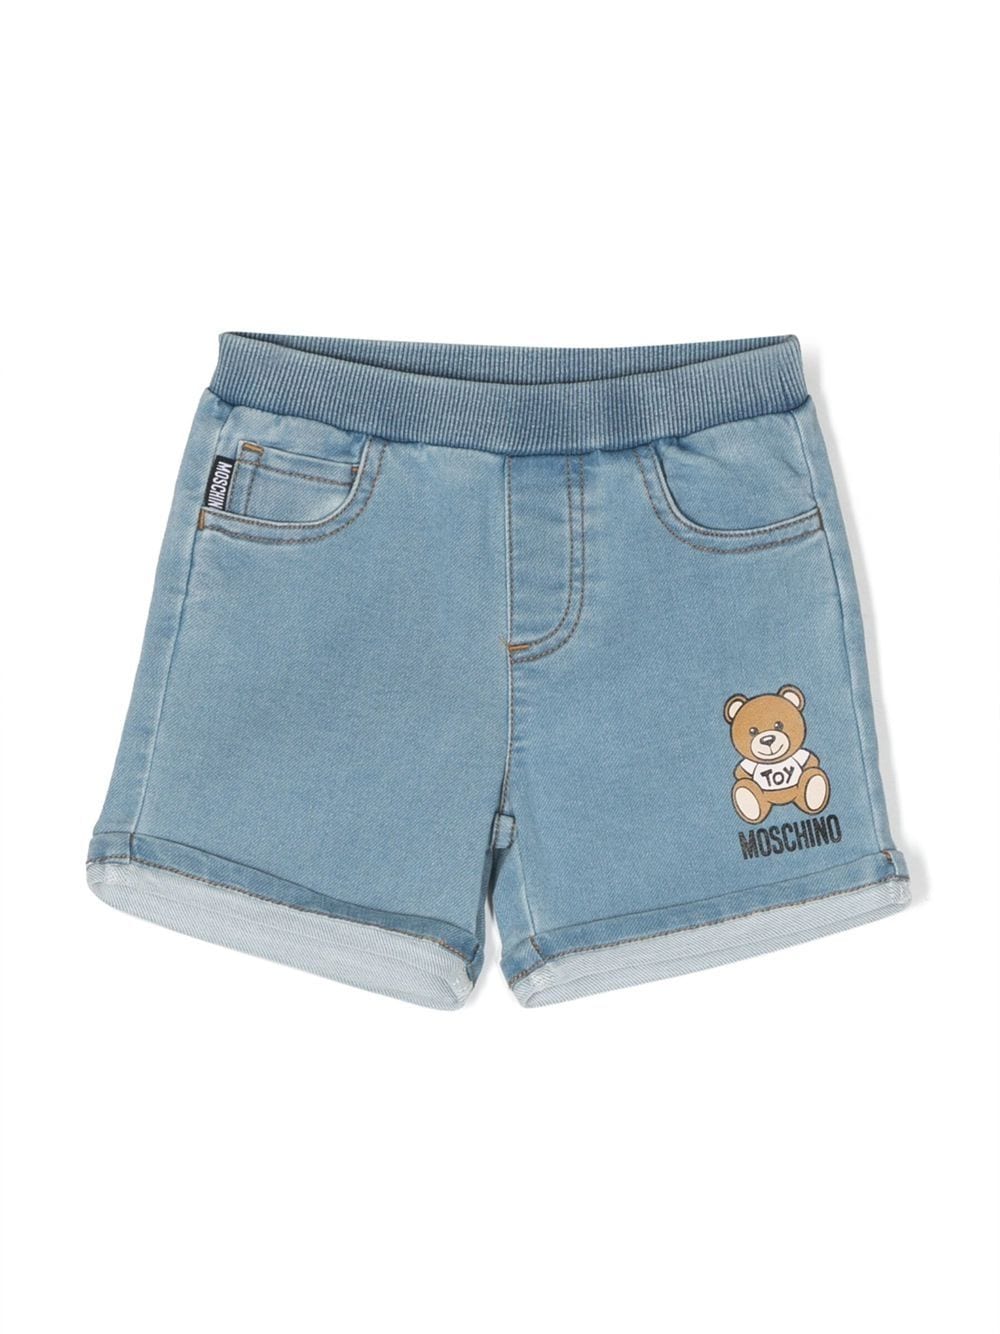 Moschino Kids Jeans-Shorts mit Teddy - Blau von Moschino Kids